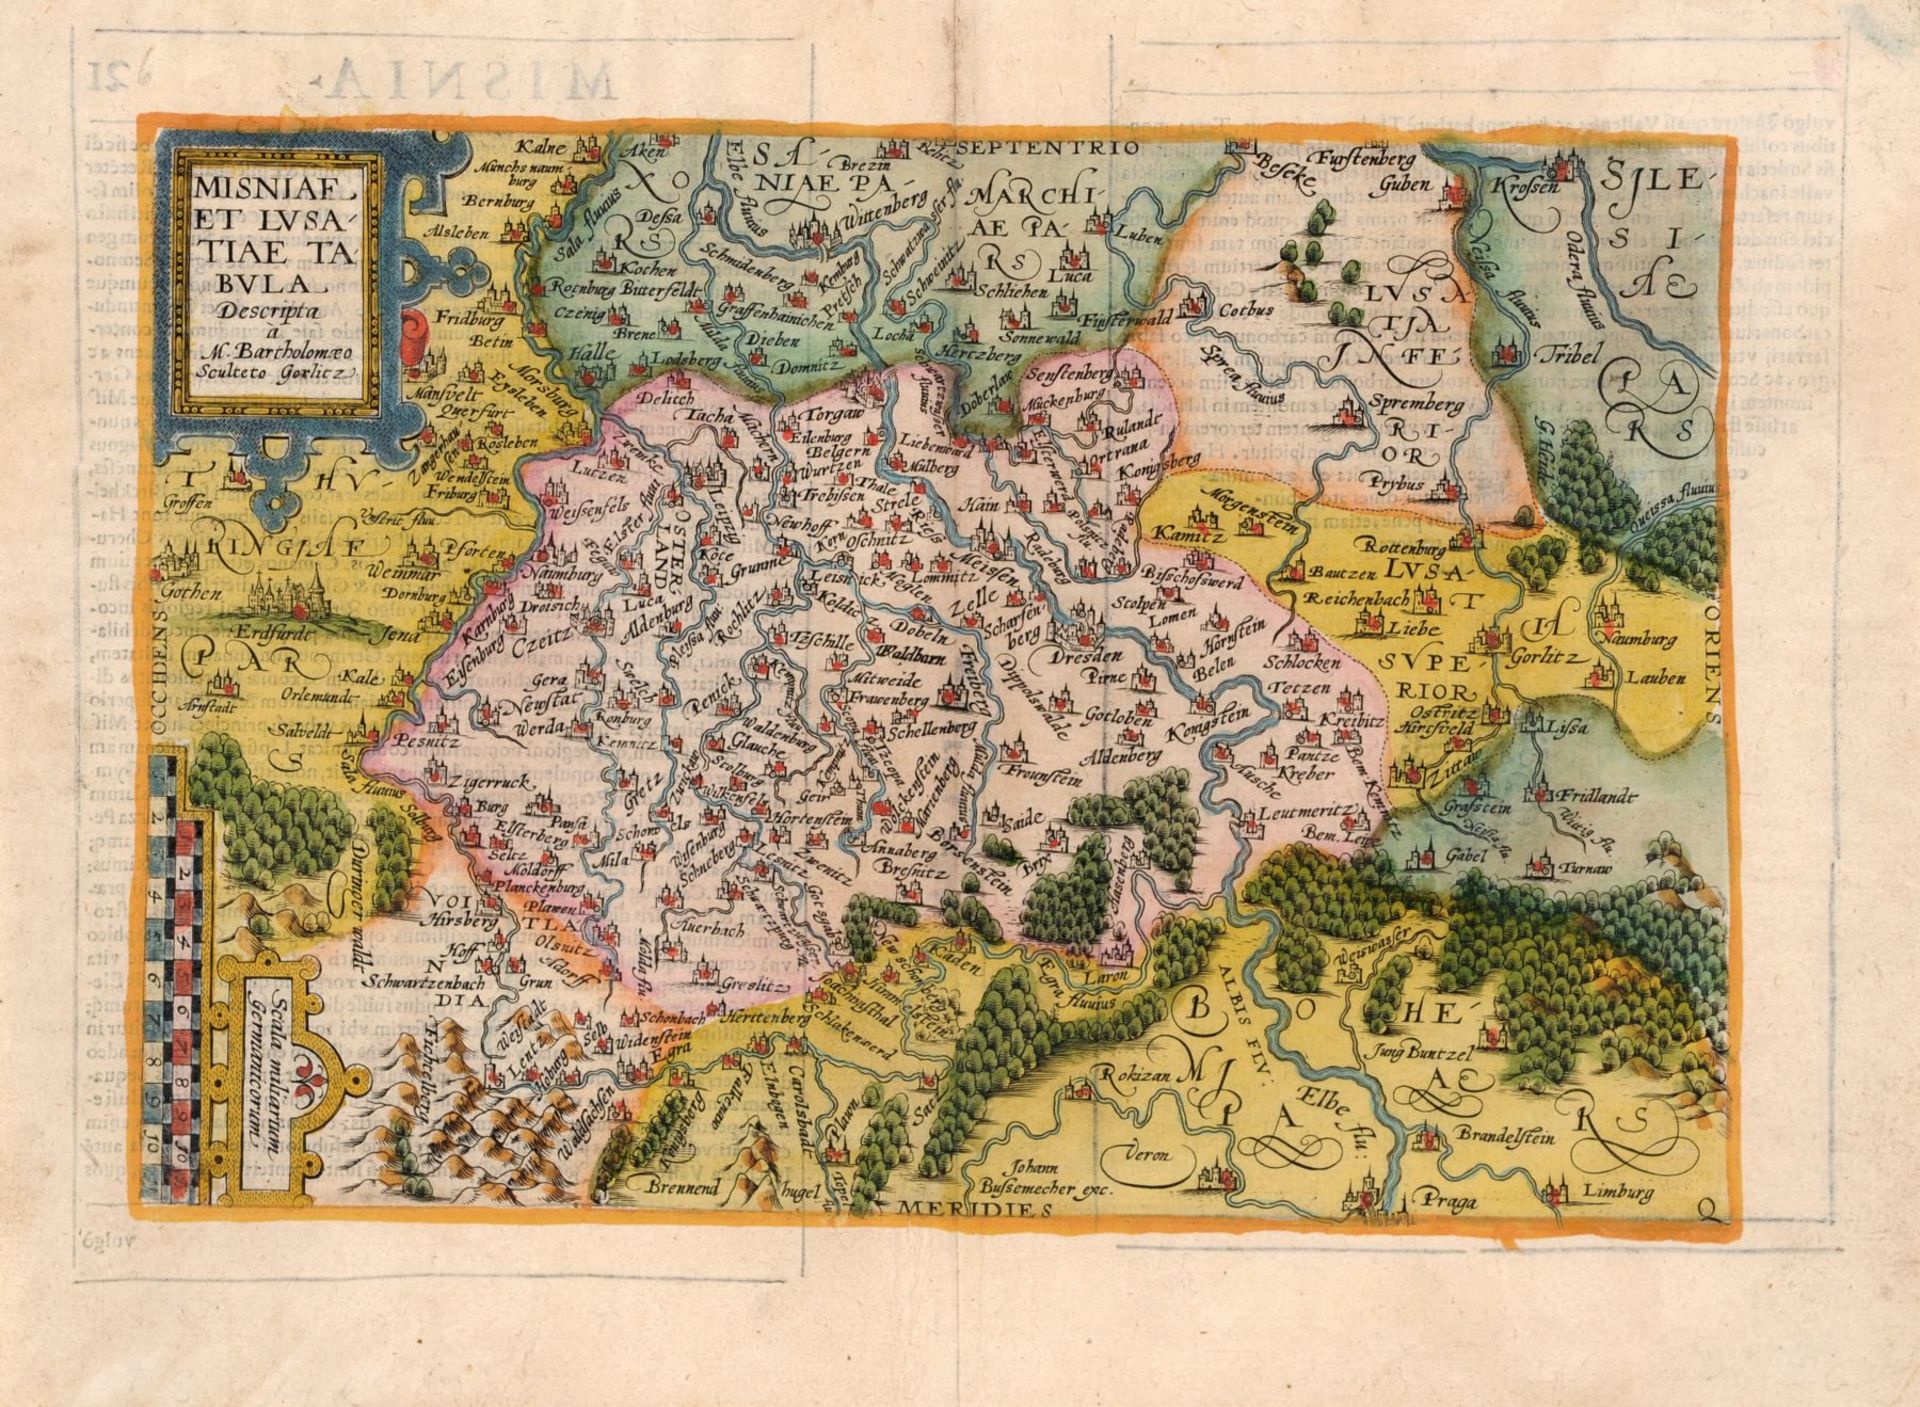 Verschiedene Stecher, Sechs Karten zu Sachsen und der Lausitz. 16. Jh. -18. Jh. Abraham Ortelius - Bild 3 aus 6